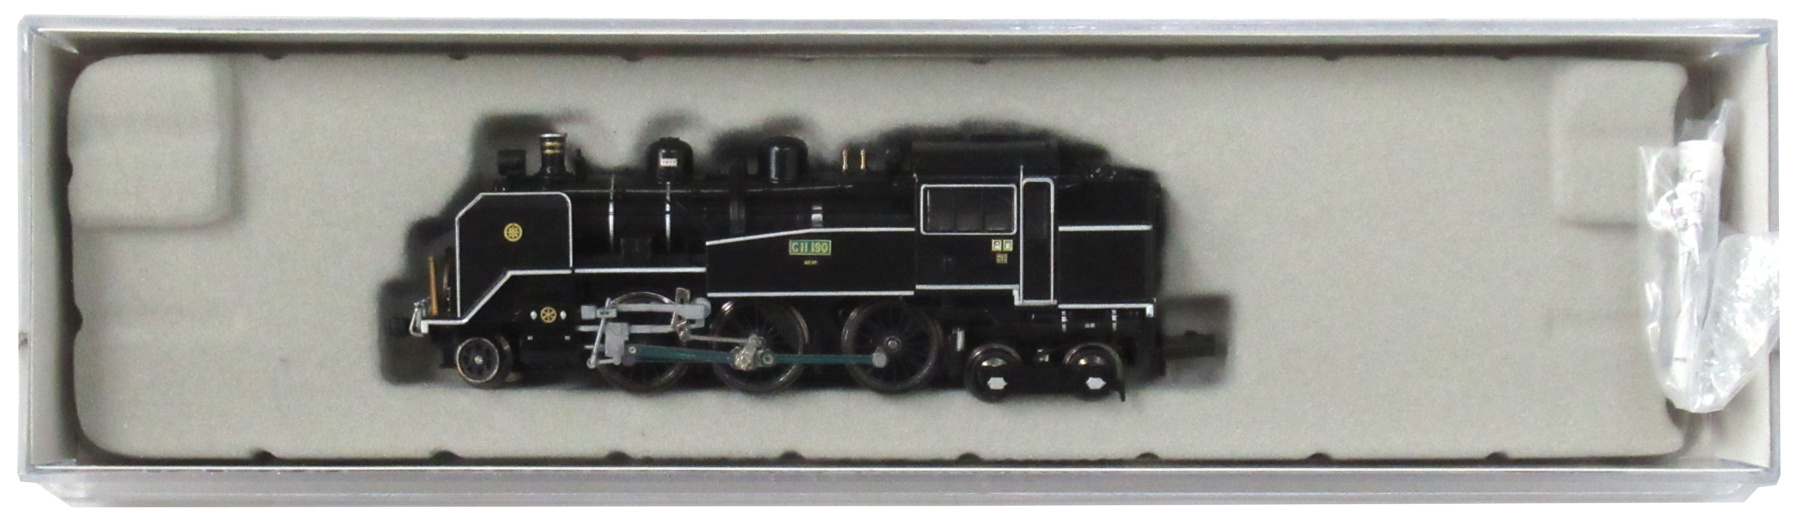 C11-190 大井川鐵道・復活(2003年) - 鉄道模型